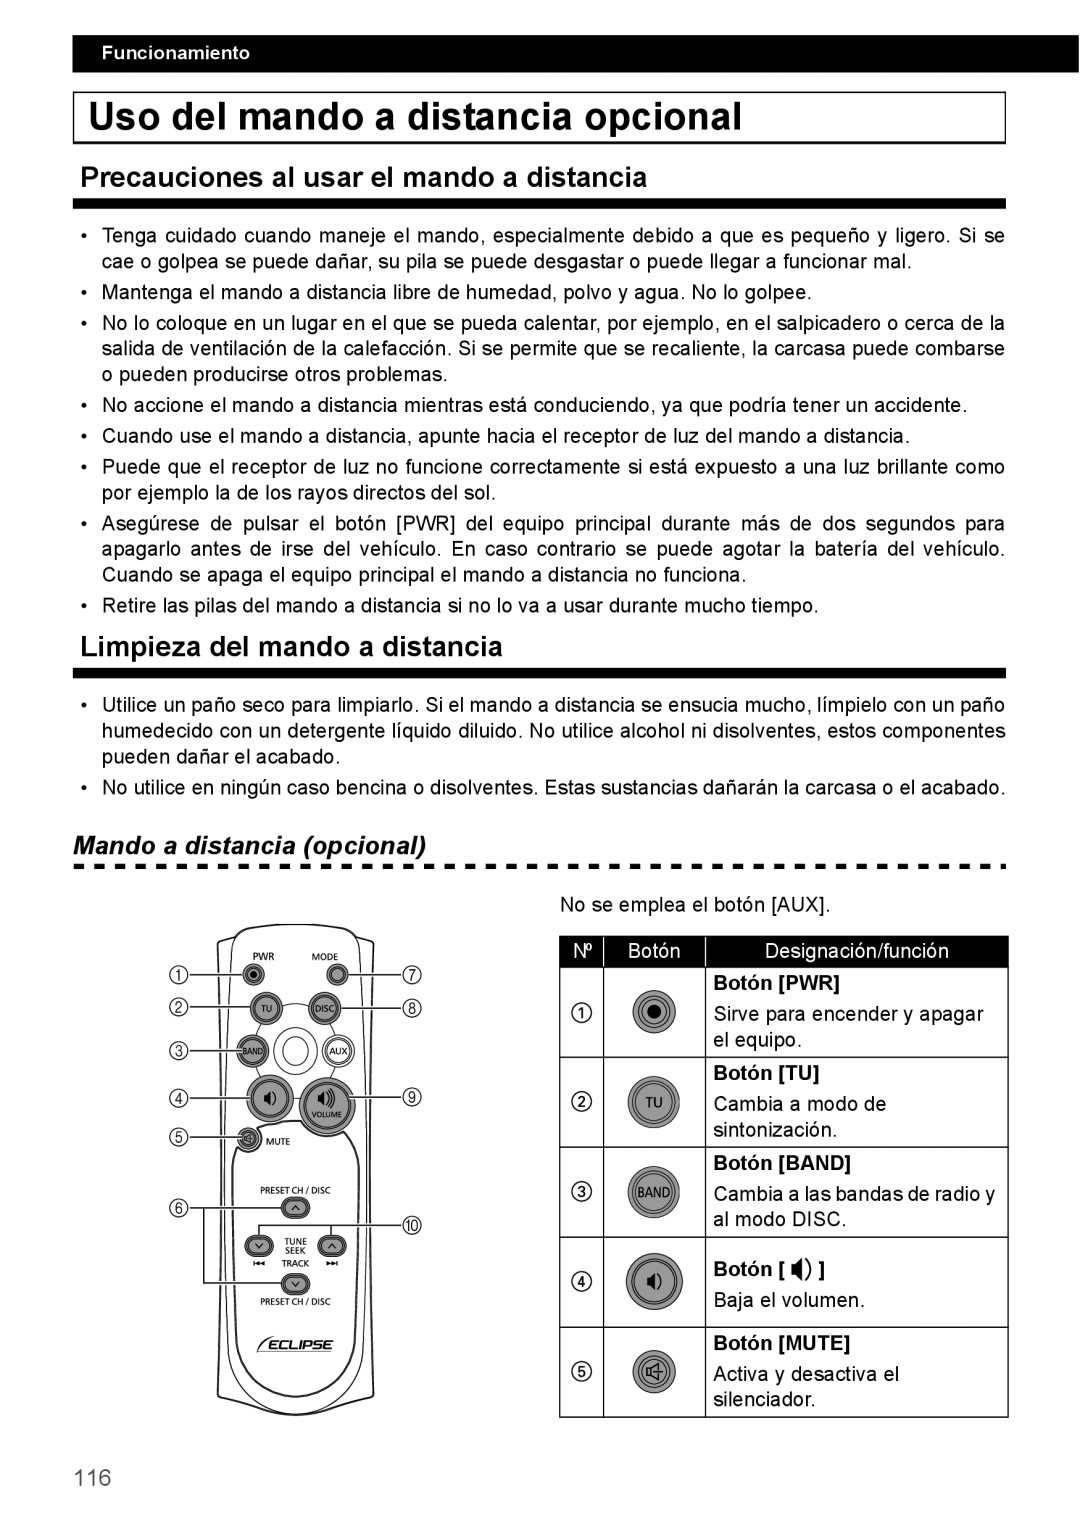 Eclipse - Fujitsu Ten CD2000 manual Uso del mando a distancia opcional, Precauciones al usar el mando a distancia, Nº Botón 